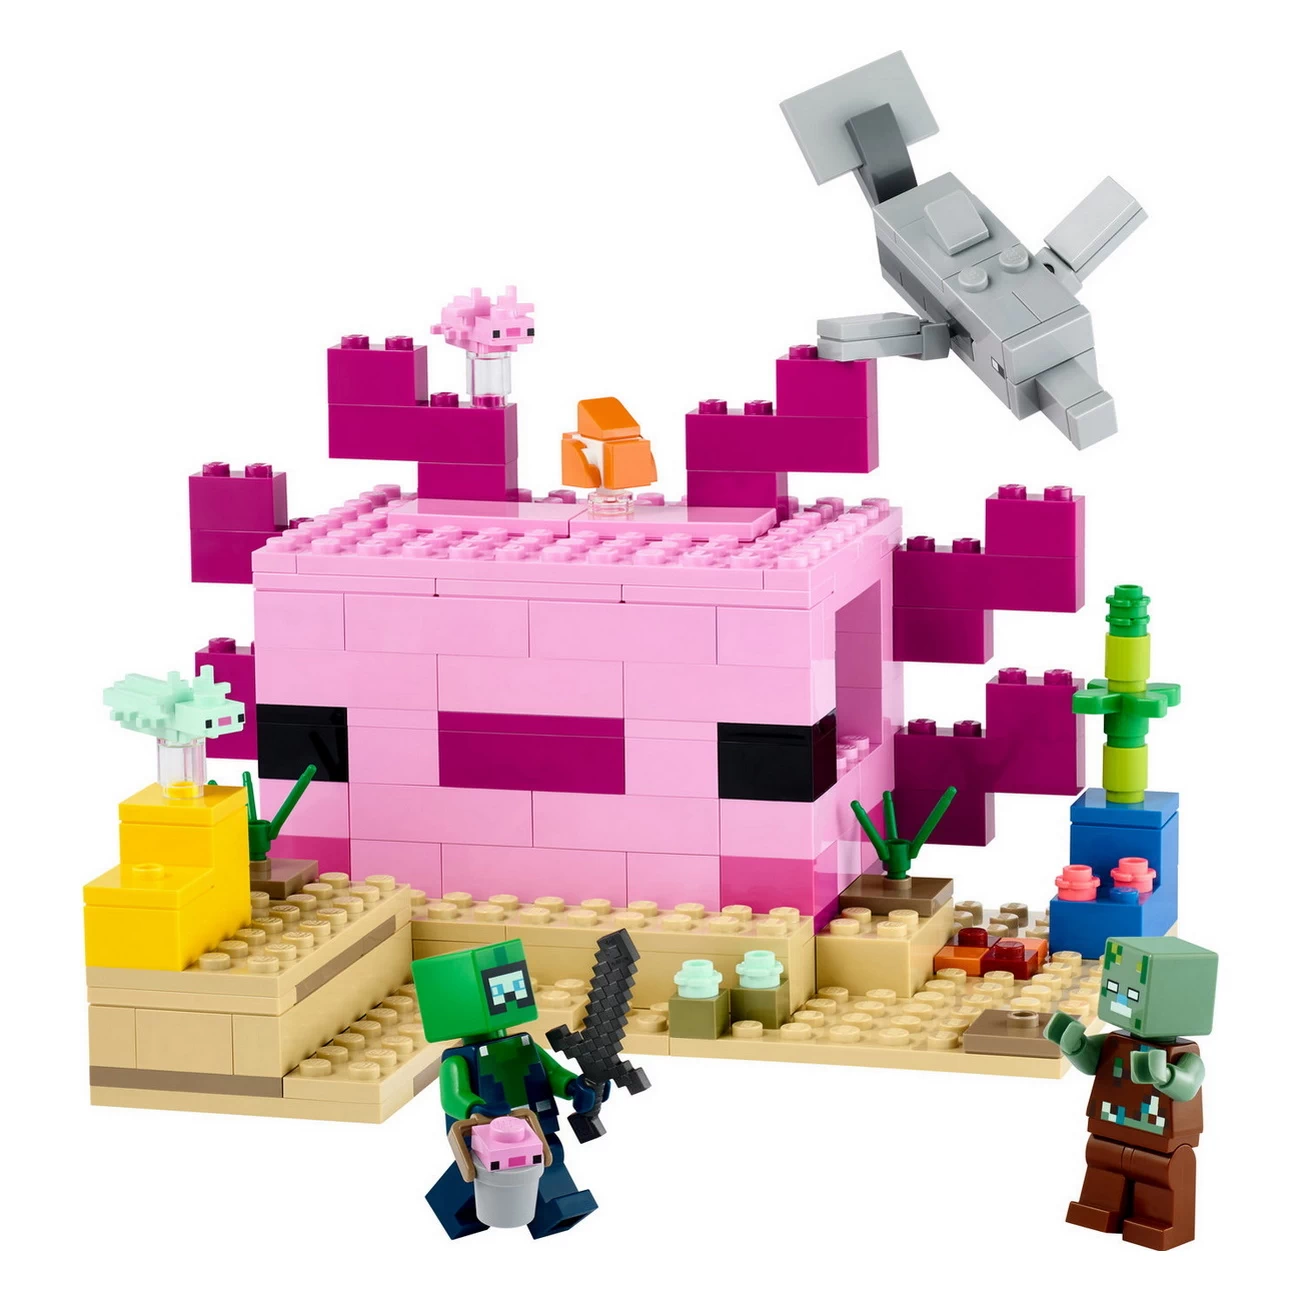 LEGO Minecraft 21247 -  Das Axolotl-Haus